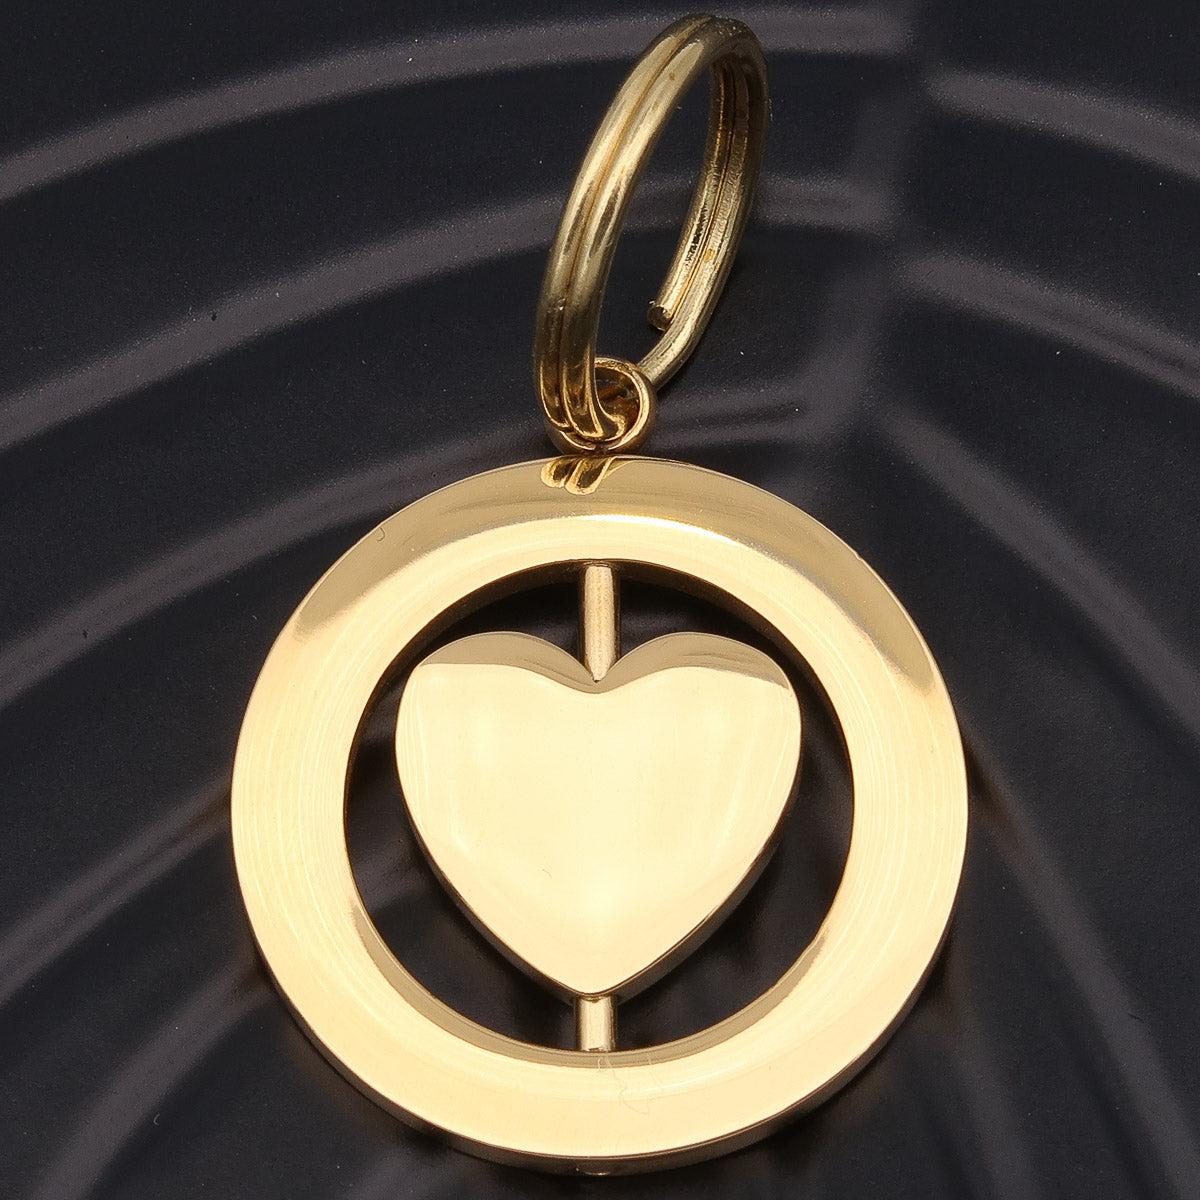 Schlüsselanhänger "Spinning heart" mit Gravur auf beiden Seiten